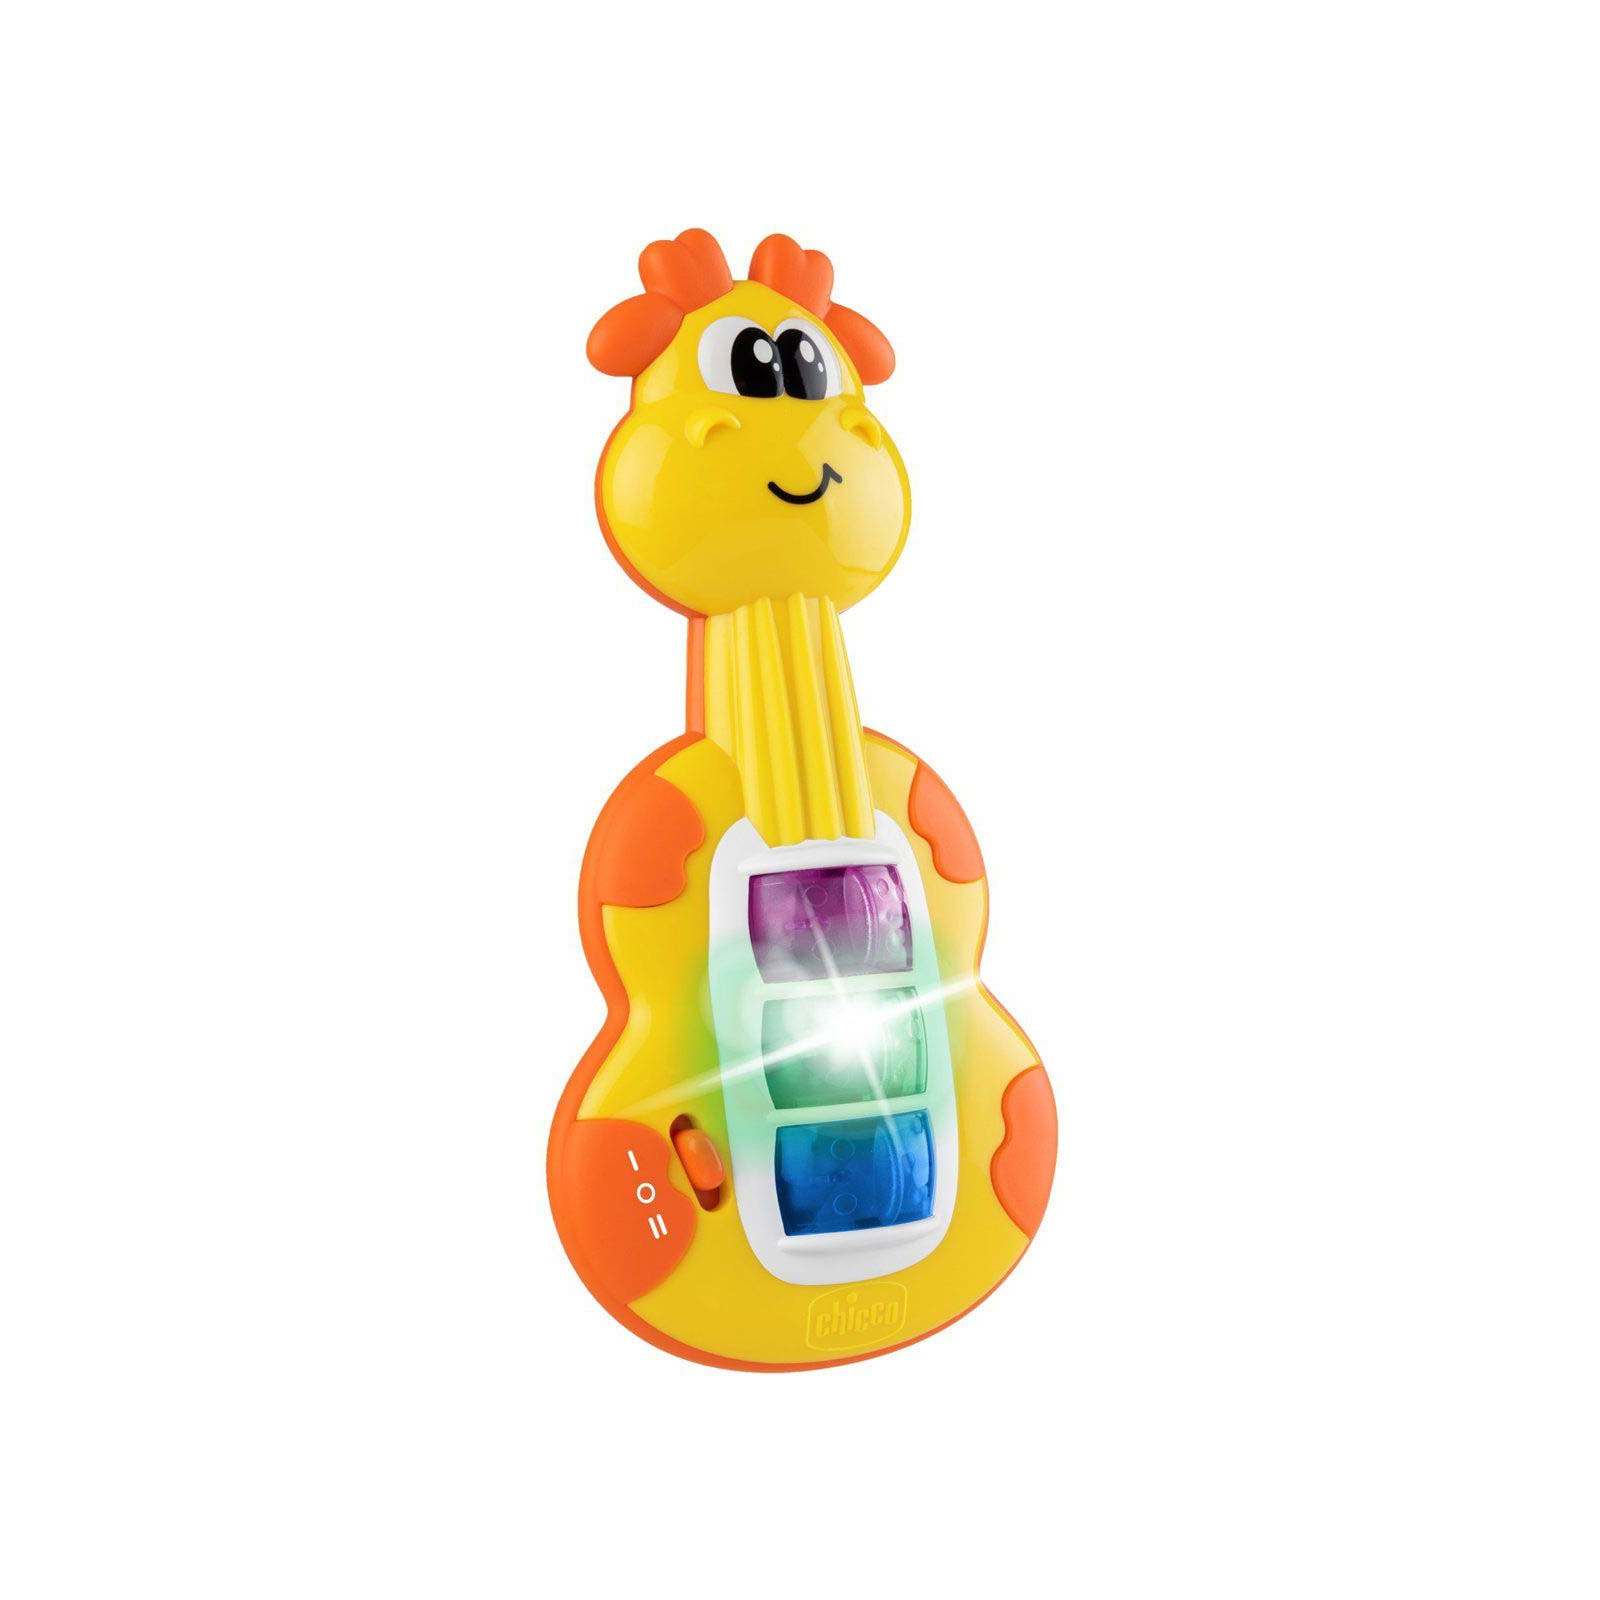 Развивающая игрушка Chicco музыкальная Минигитара (11160.00) изображение 2